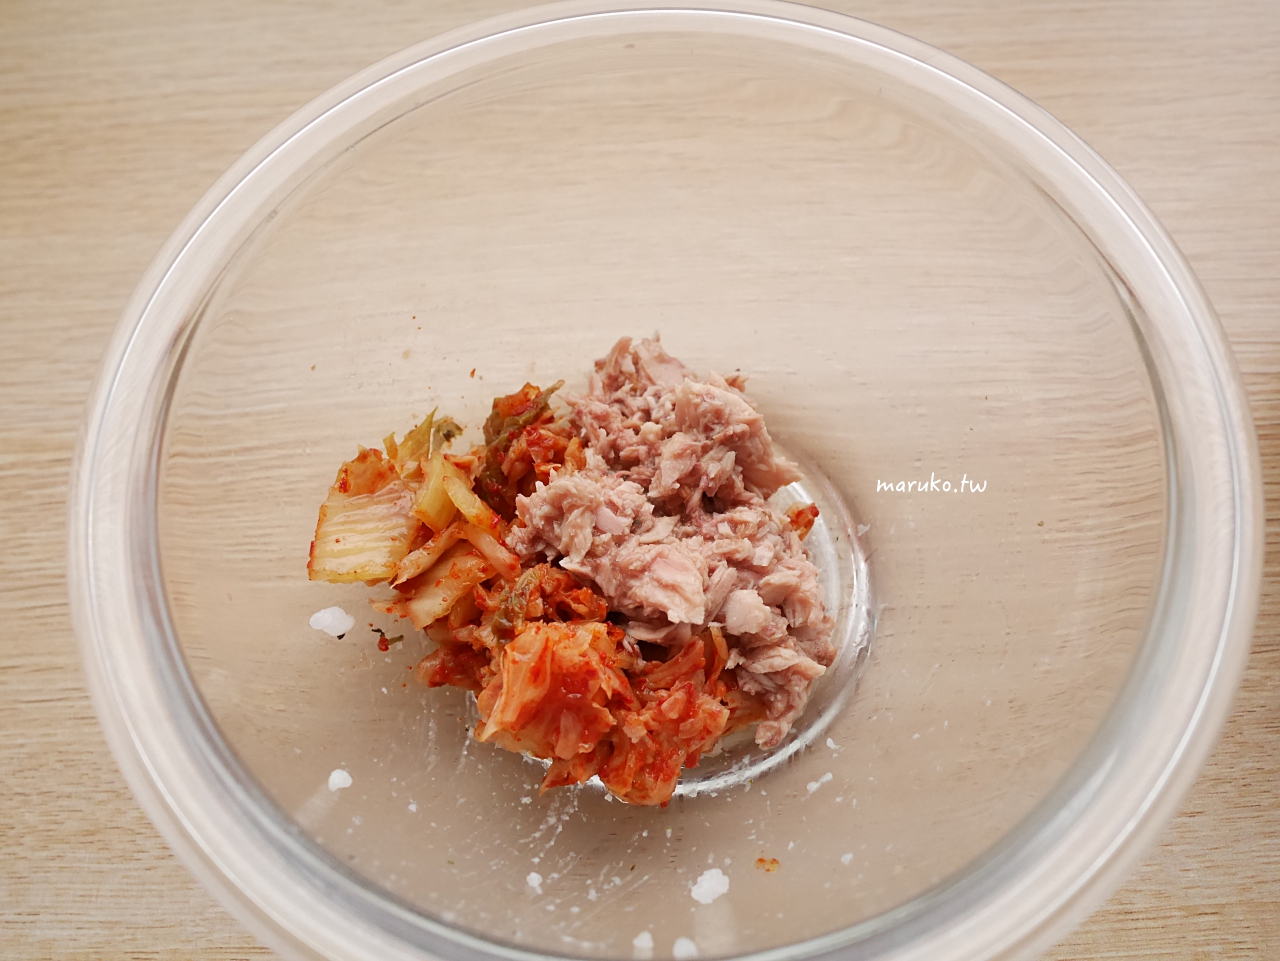 【食譜】泡菜鮪魚米漢堡 5分鐘上菜 韓式海苔拌飯米漢堡這樣做 @Maruko與美食有個約會